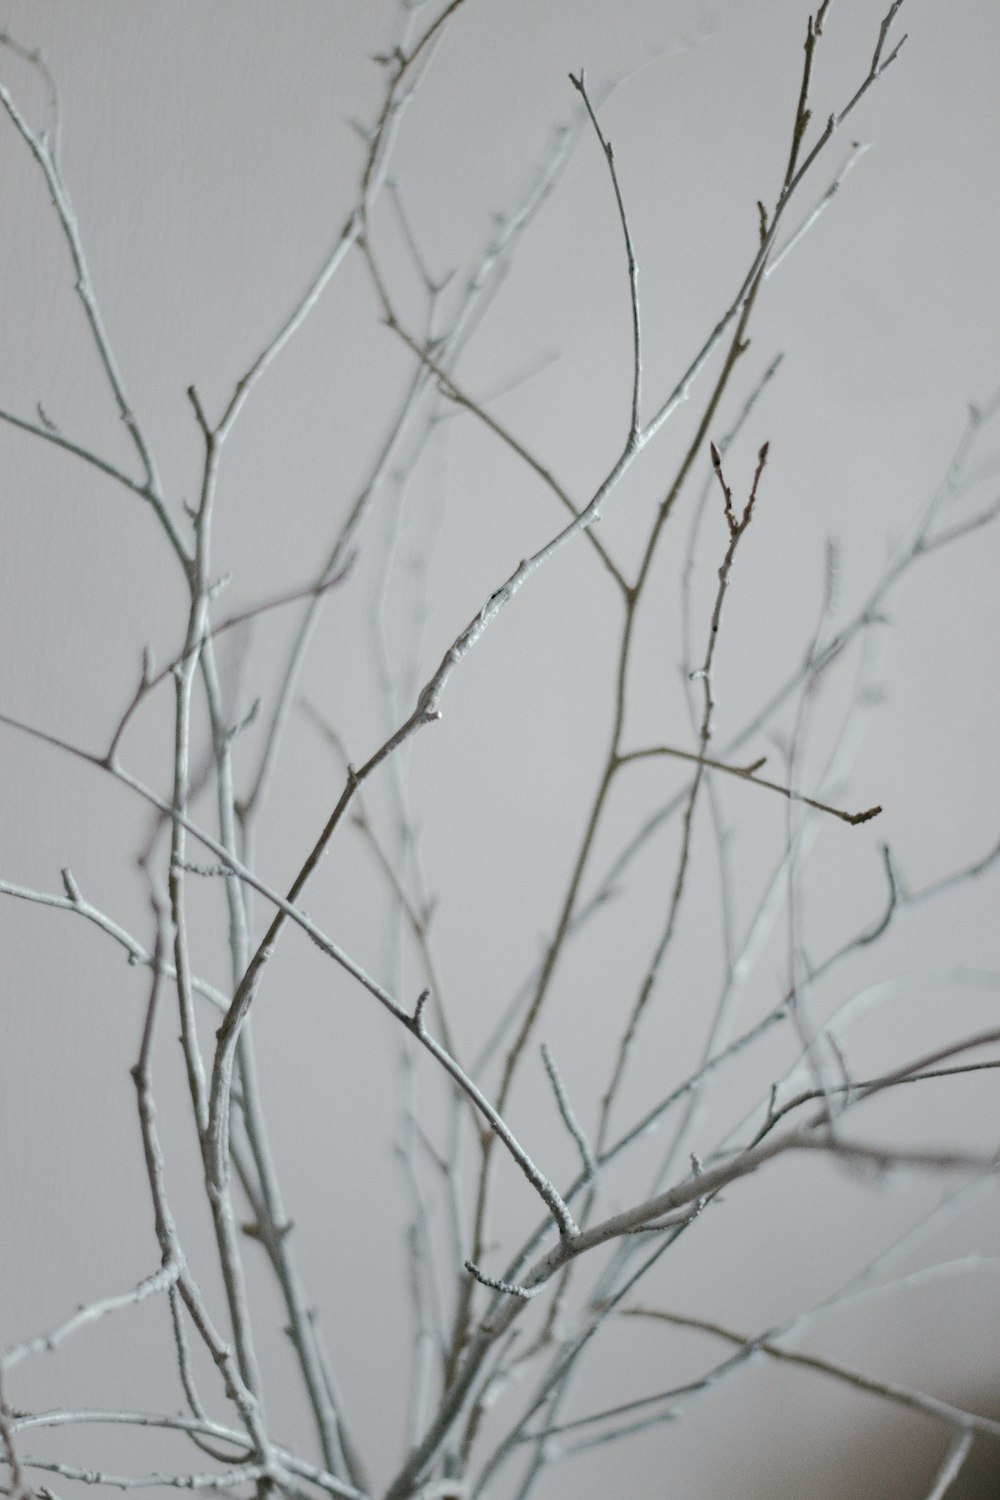 rama de árbol sin hojas sobre fondo blanco